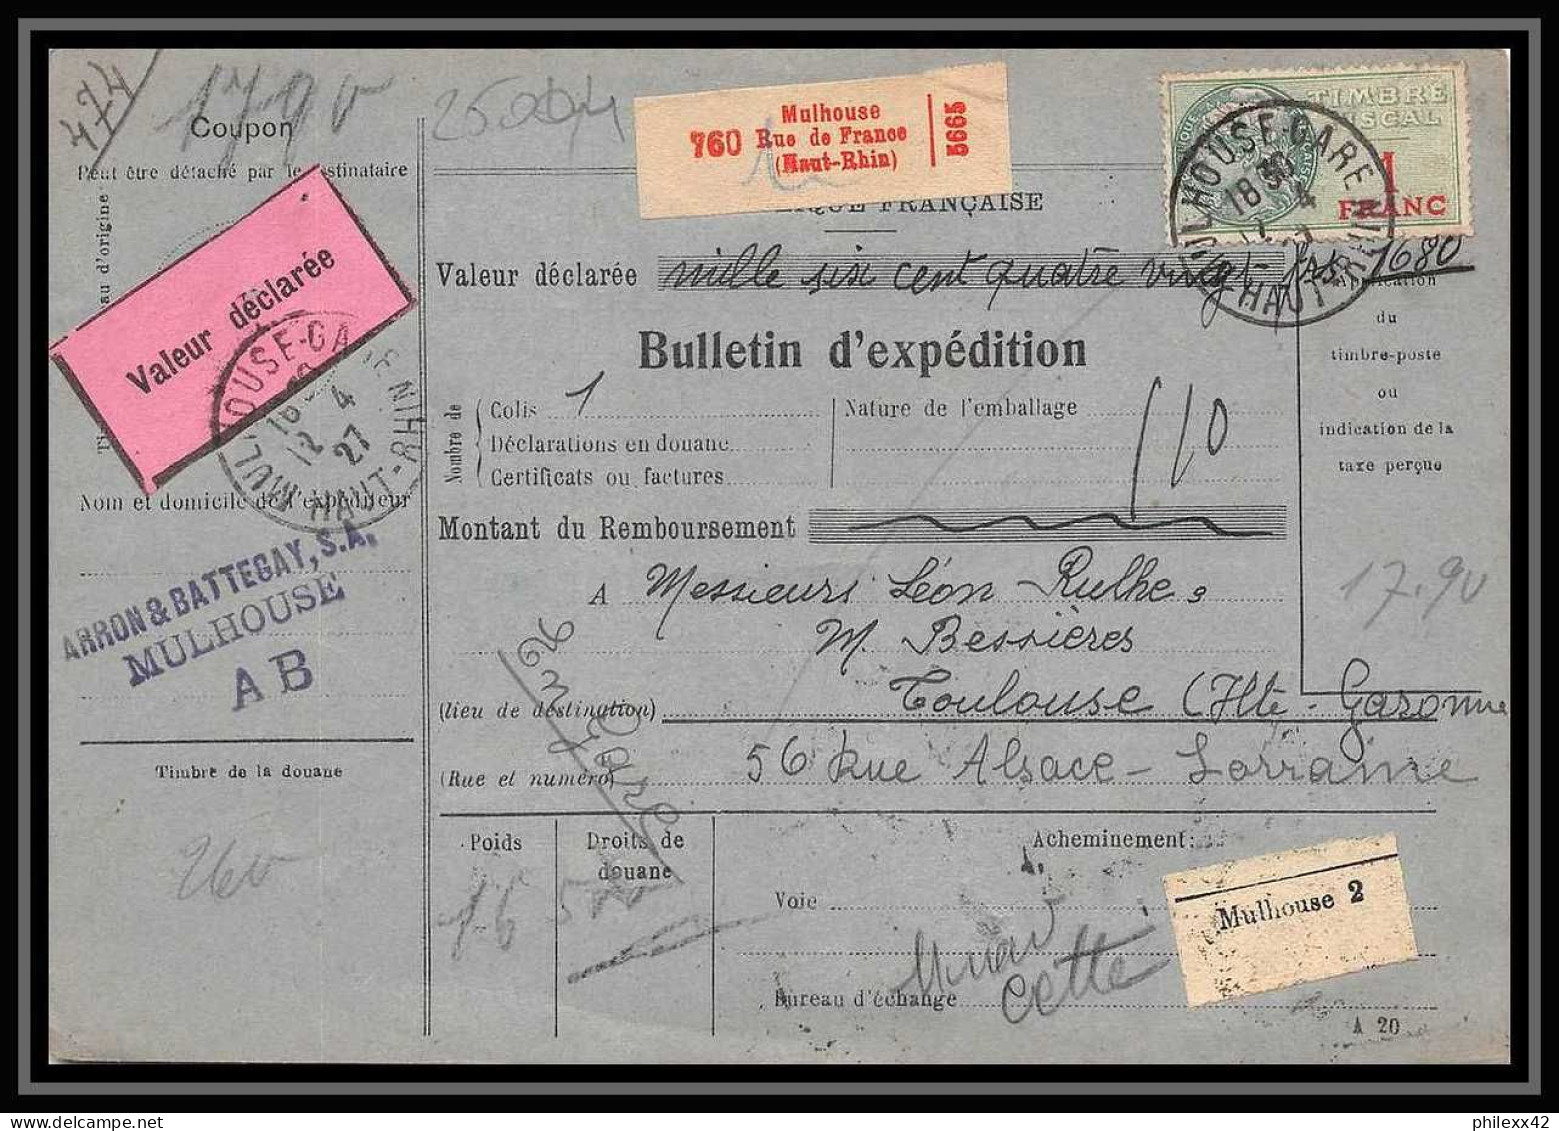 25004 Bulletin D'expédition France Colis Postaux Fiscal Haut Rhin - 1927 Mulhouse Merson 123+207 Valeur Déclarée - Brieven & Documenten